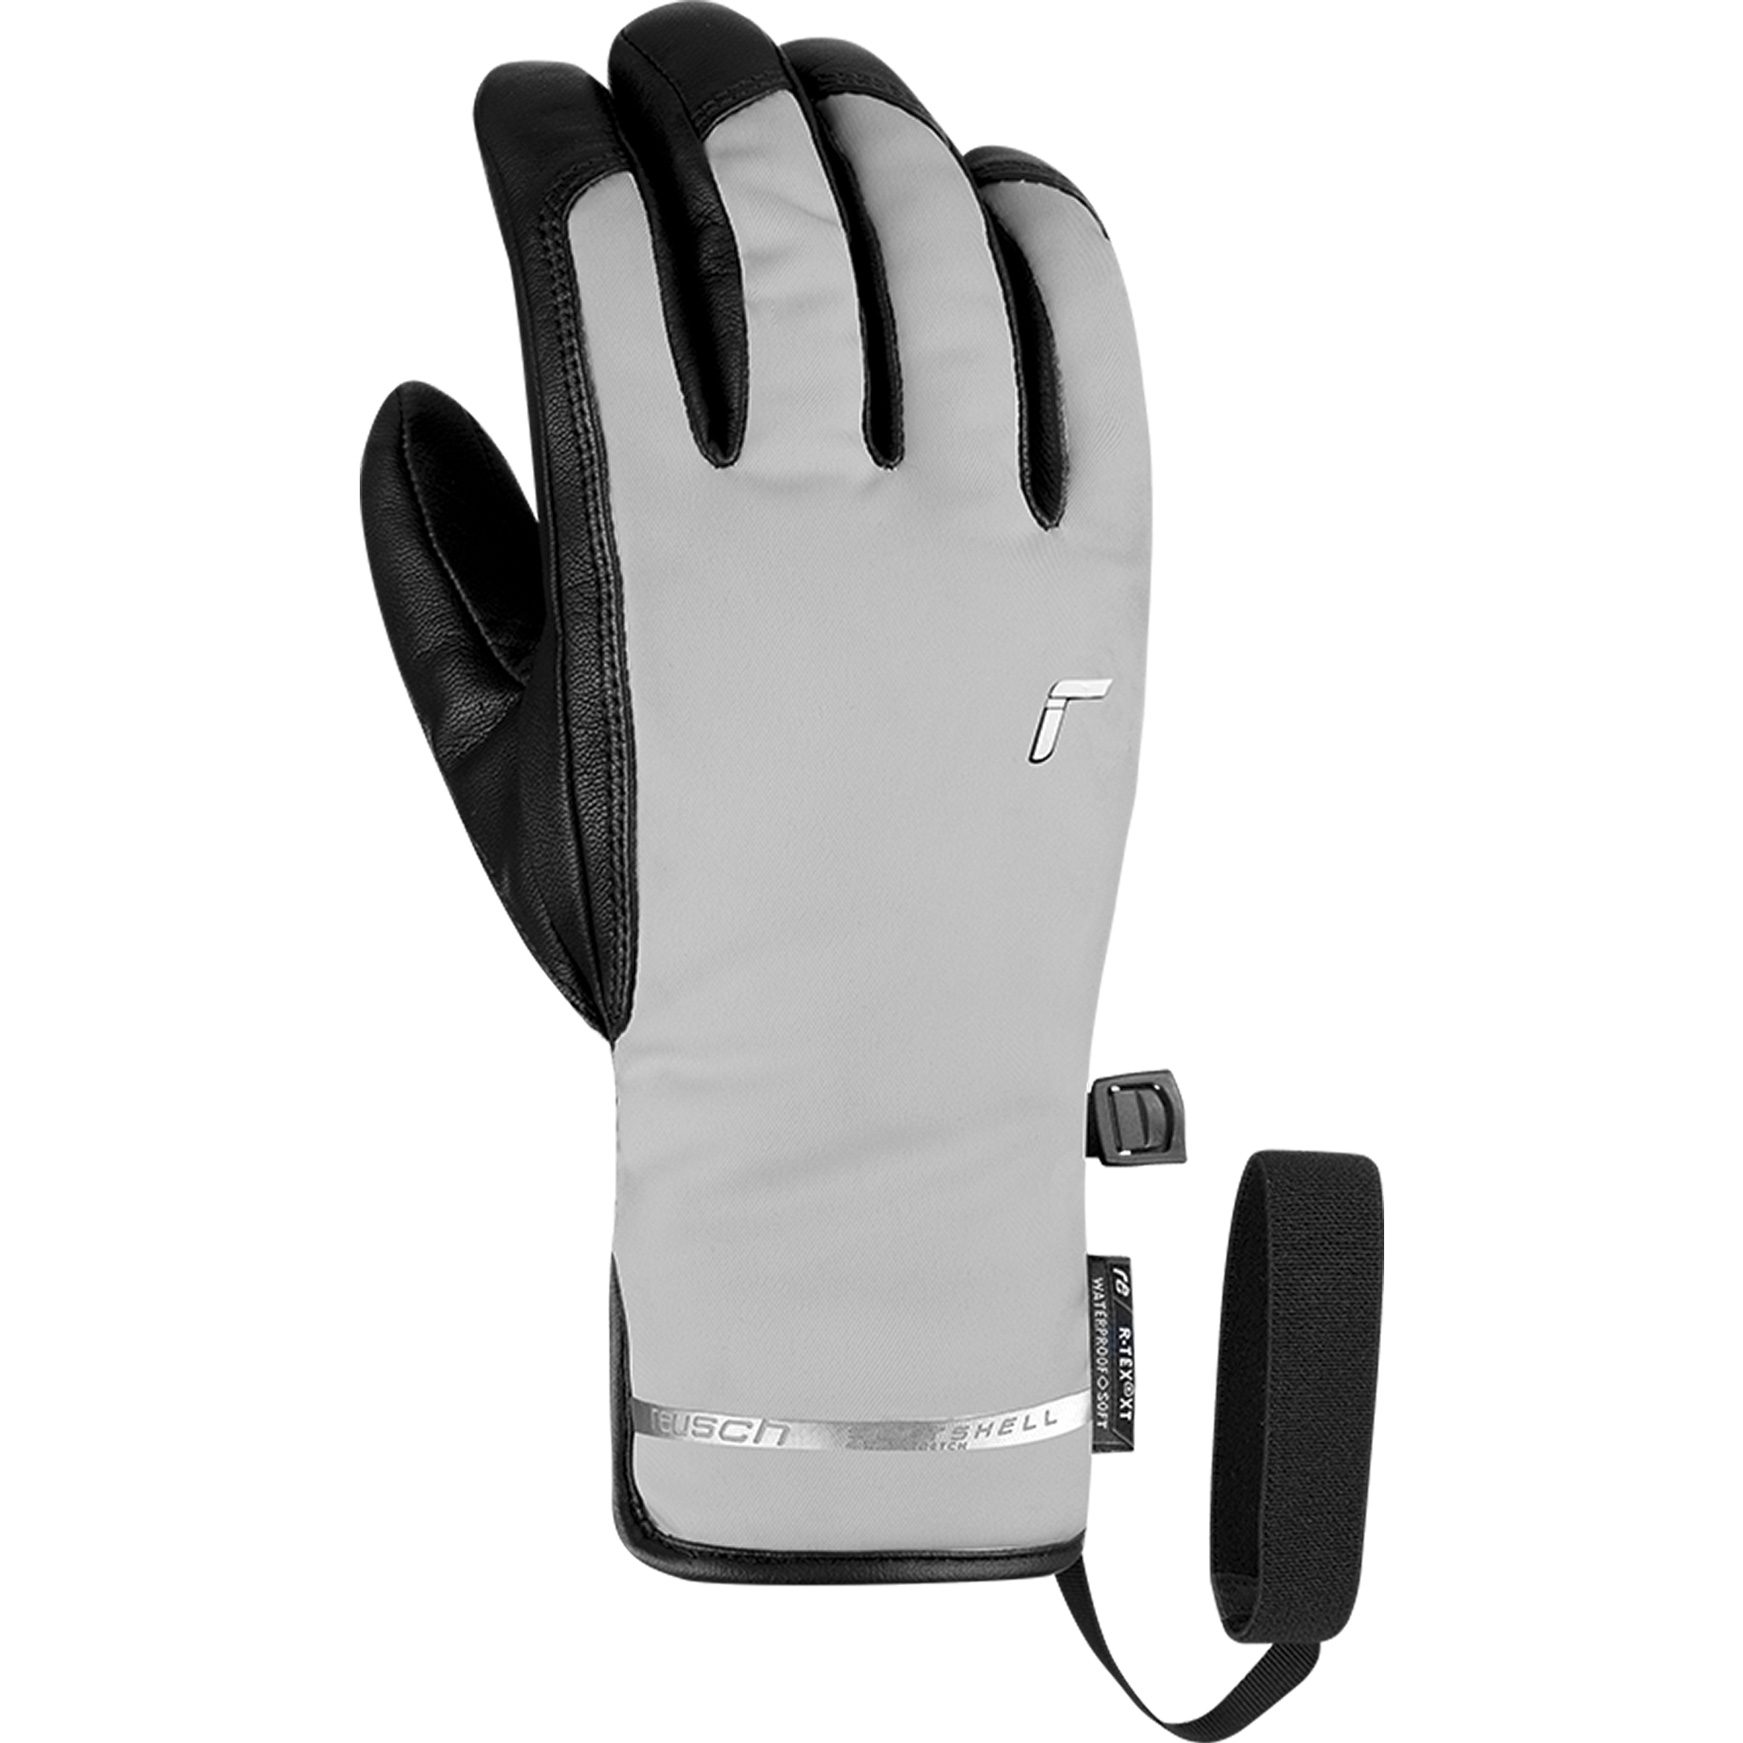 Reusch - Explorer Pro R-Tex® PCR Handschuhe Damen glacier grey kaufen im  Sport Bittl Shop